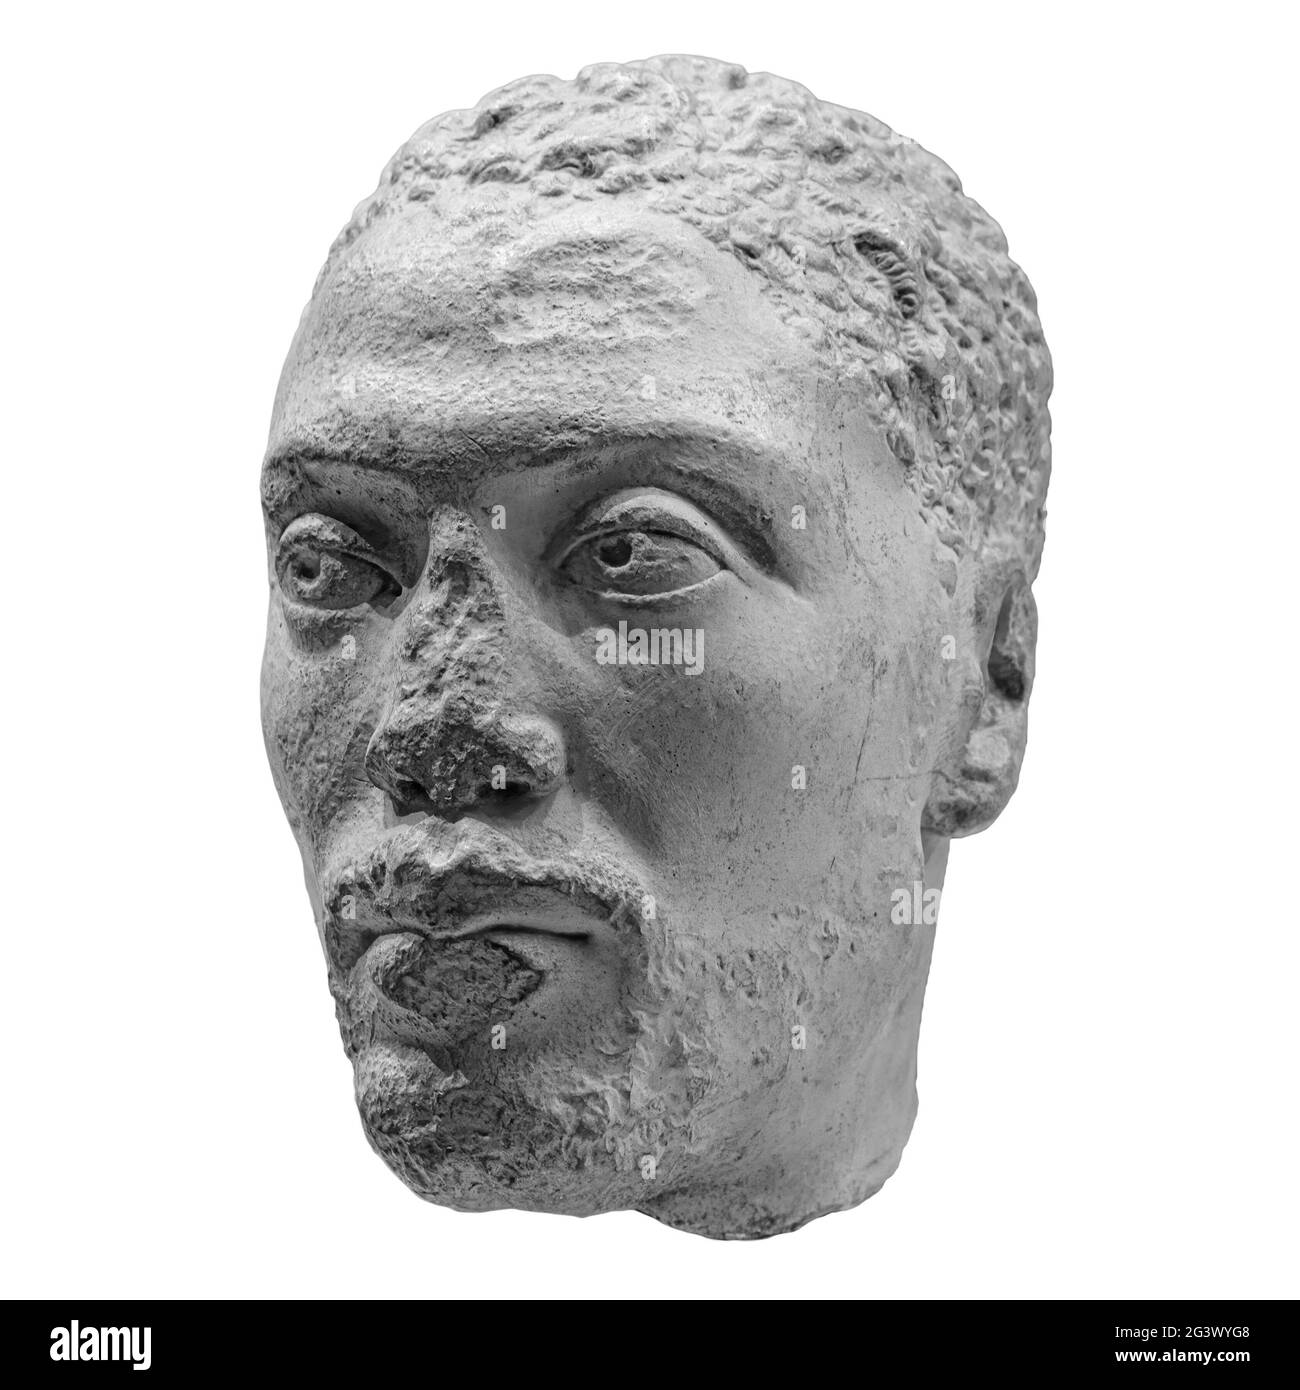 Chef antique de l'ancien prêtre d'homme de l'ancien Isis égyptien avec des fissures de sculpture. Statue face isolée sur fond blanc Banque D'Images